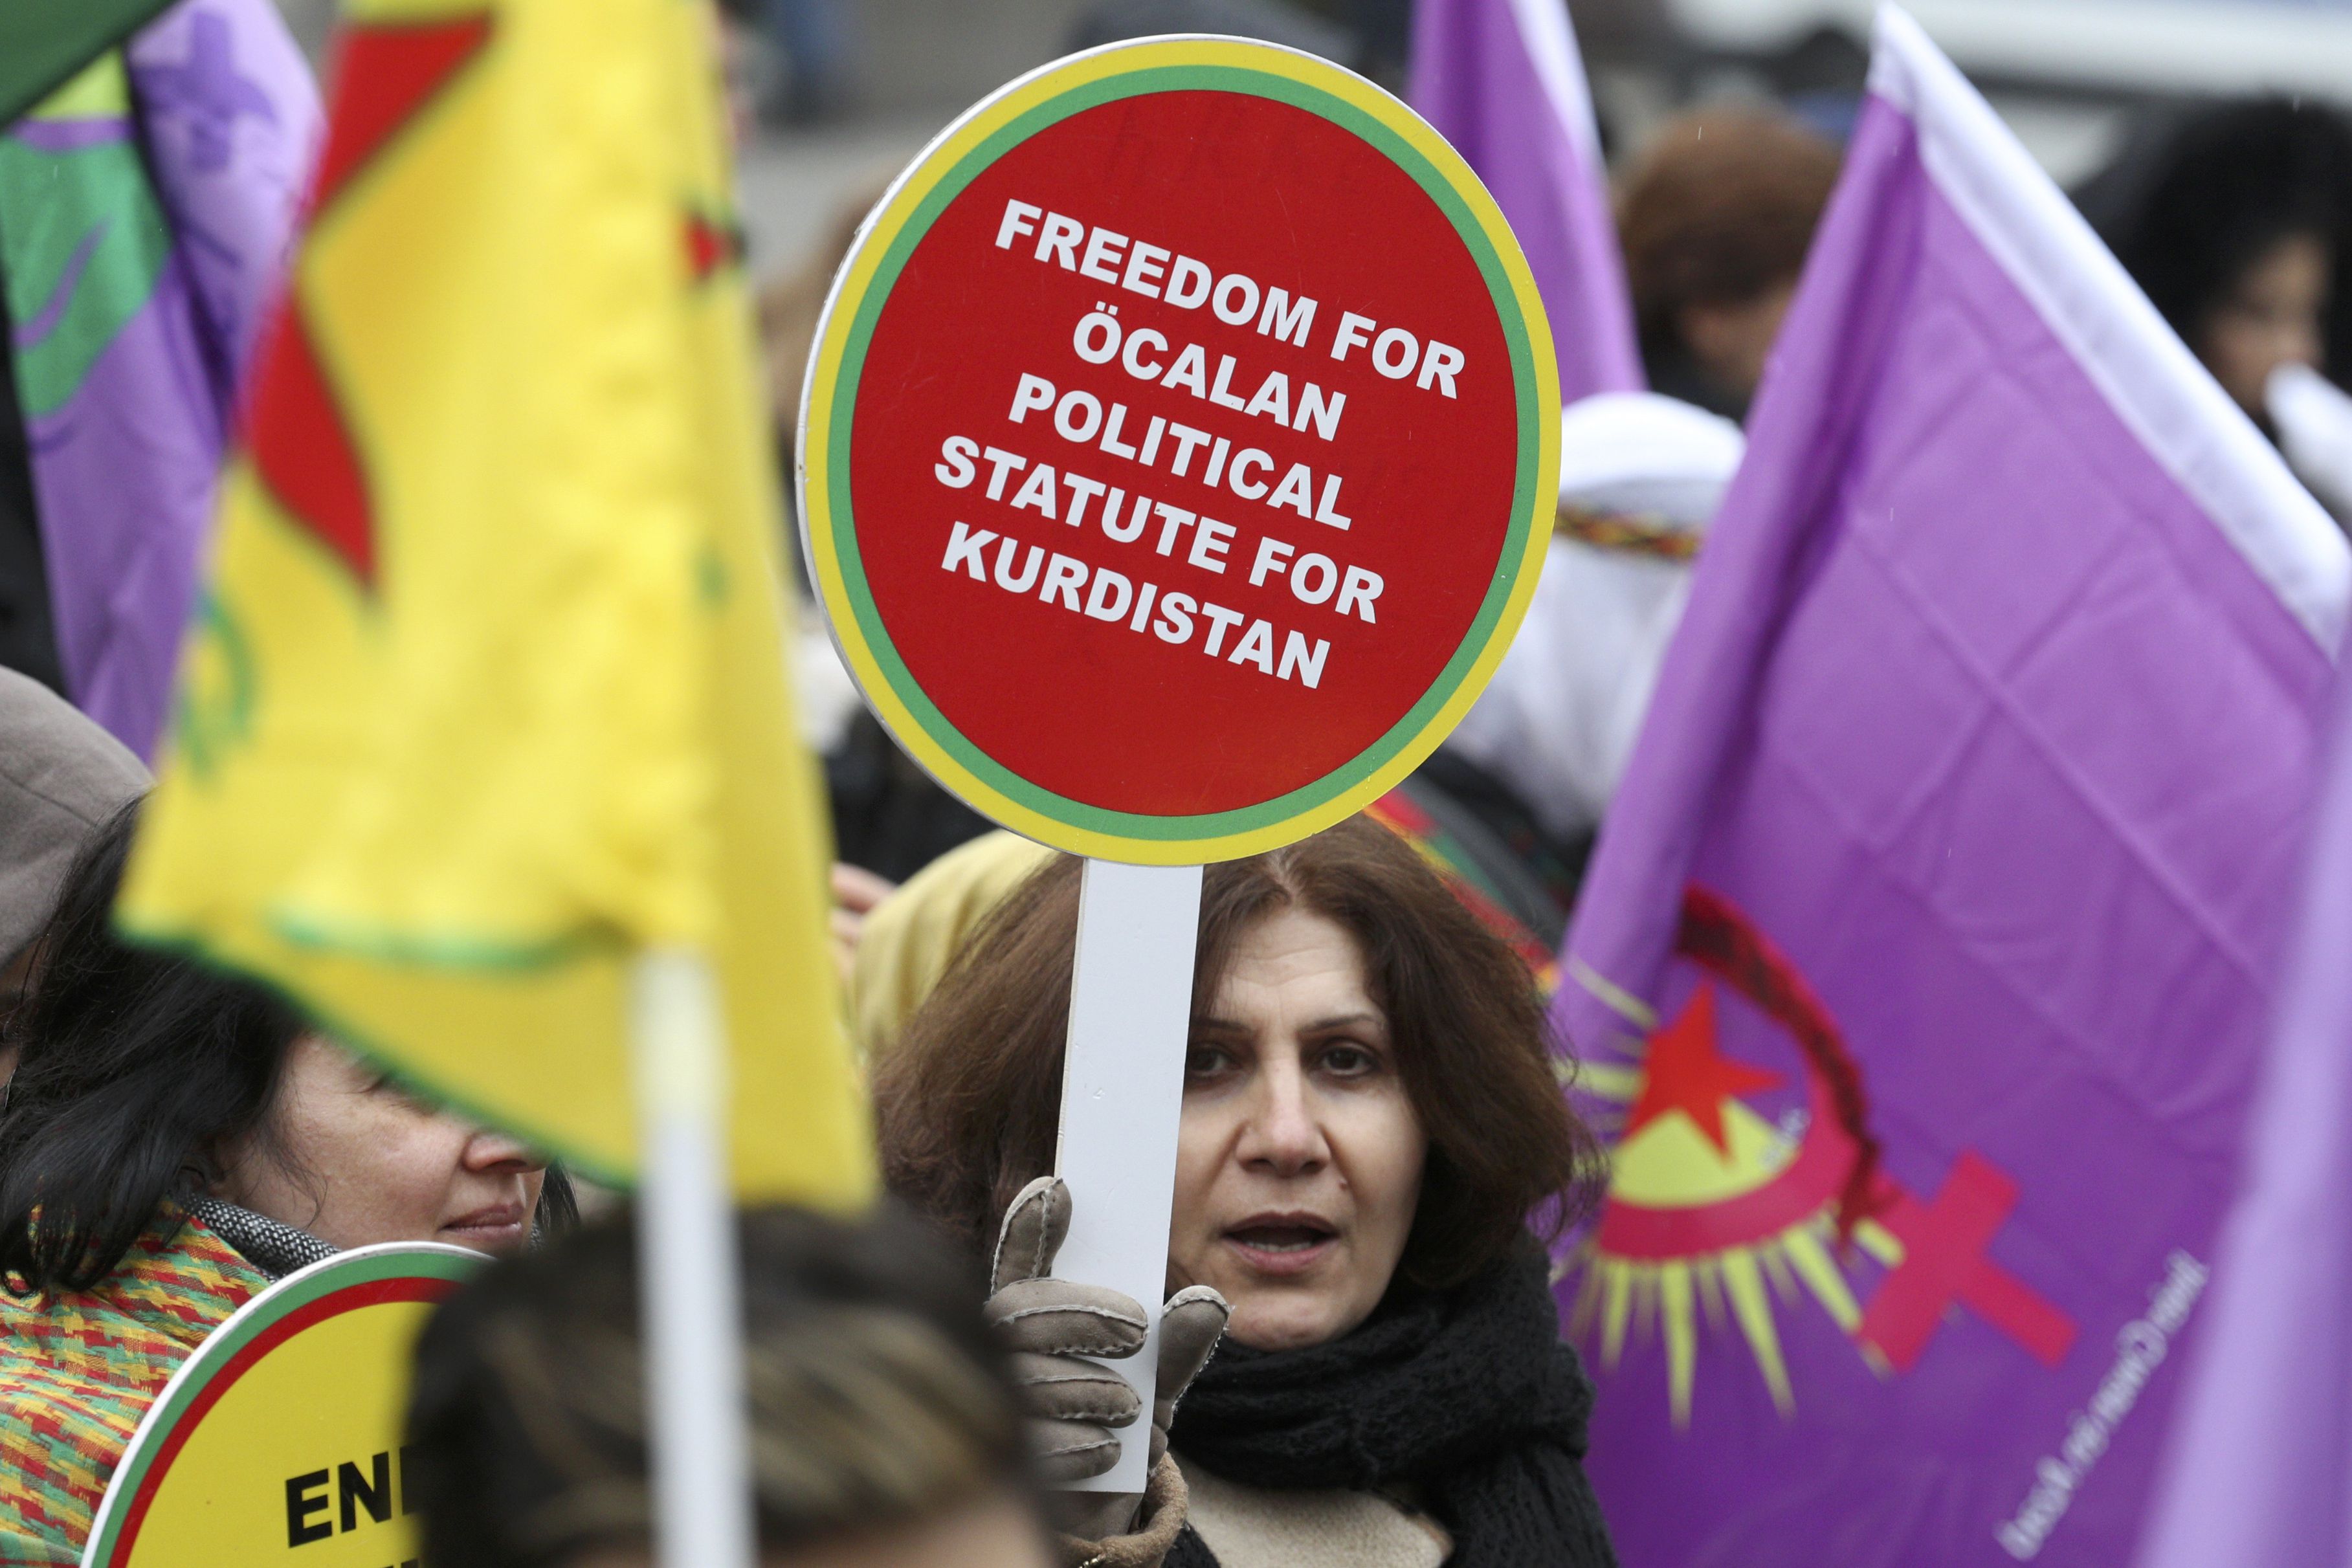 سيدة تحمل لافته تطالب بالحرية للزعيم الكردى المسجون فى جزيرة تركية